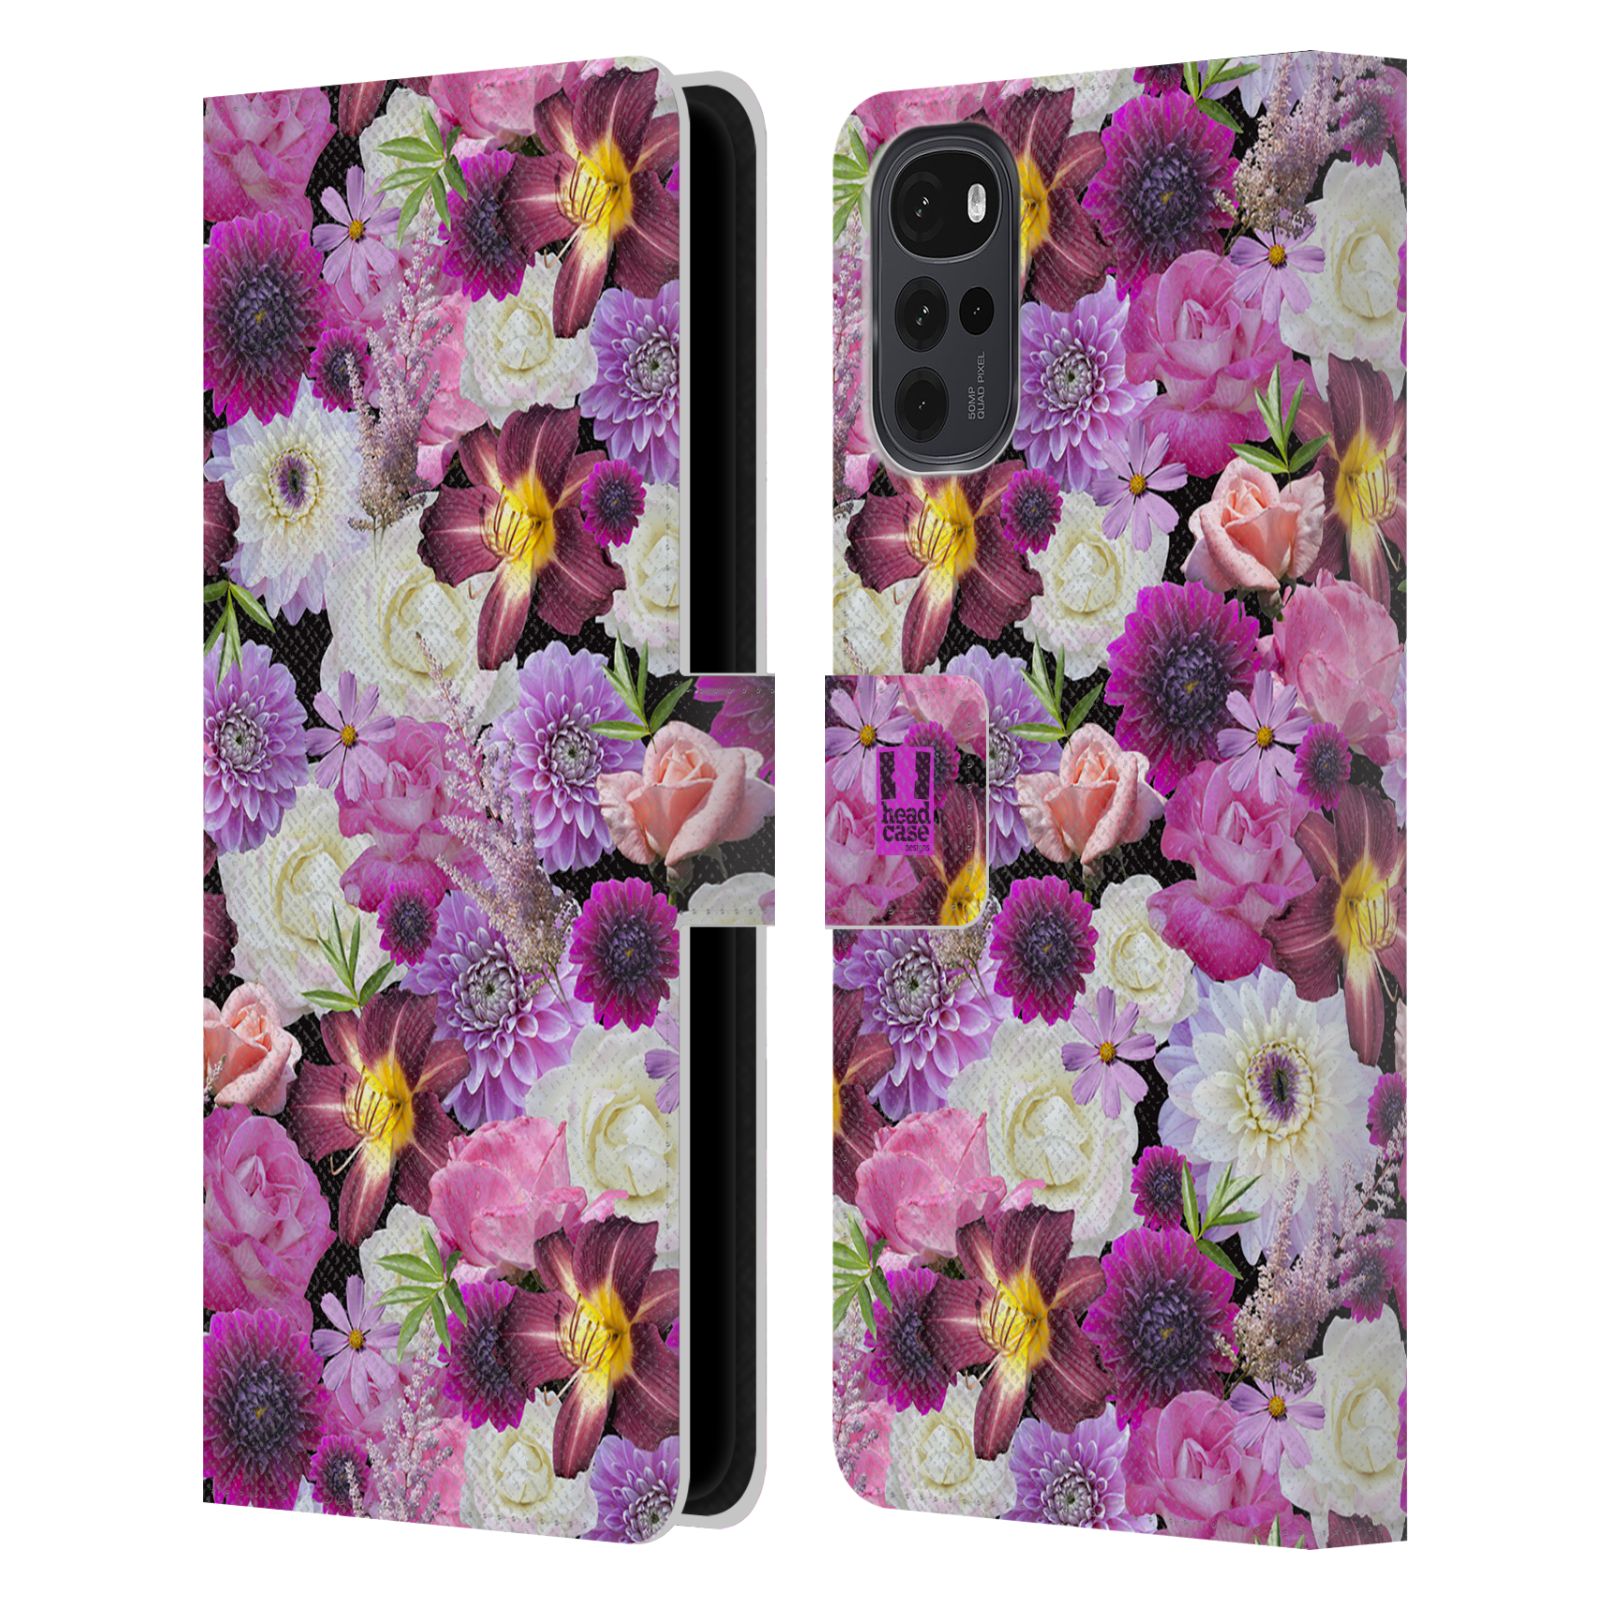 Pouzdro HEAD CASE na mobil Motorola Moto G22 květy foto fialová a bílá